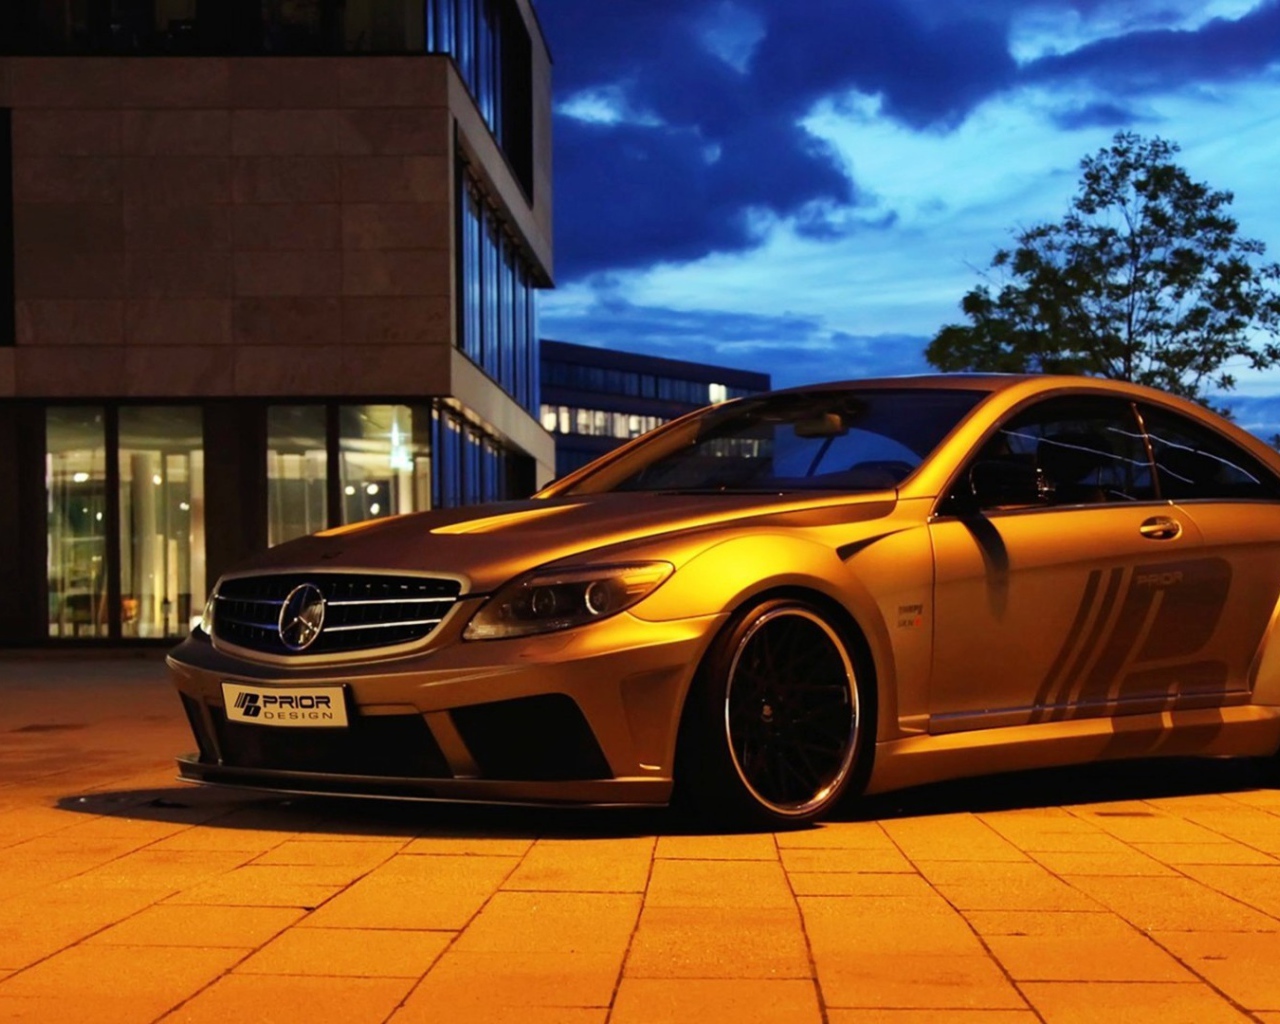 Автомобиль Mercedes-Benz золотого цвета